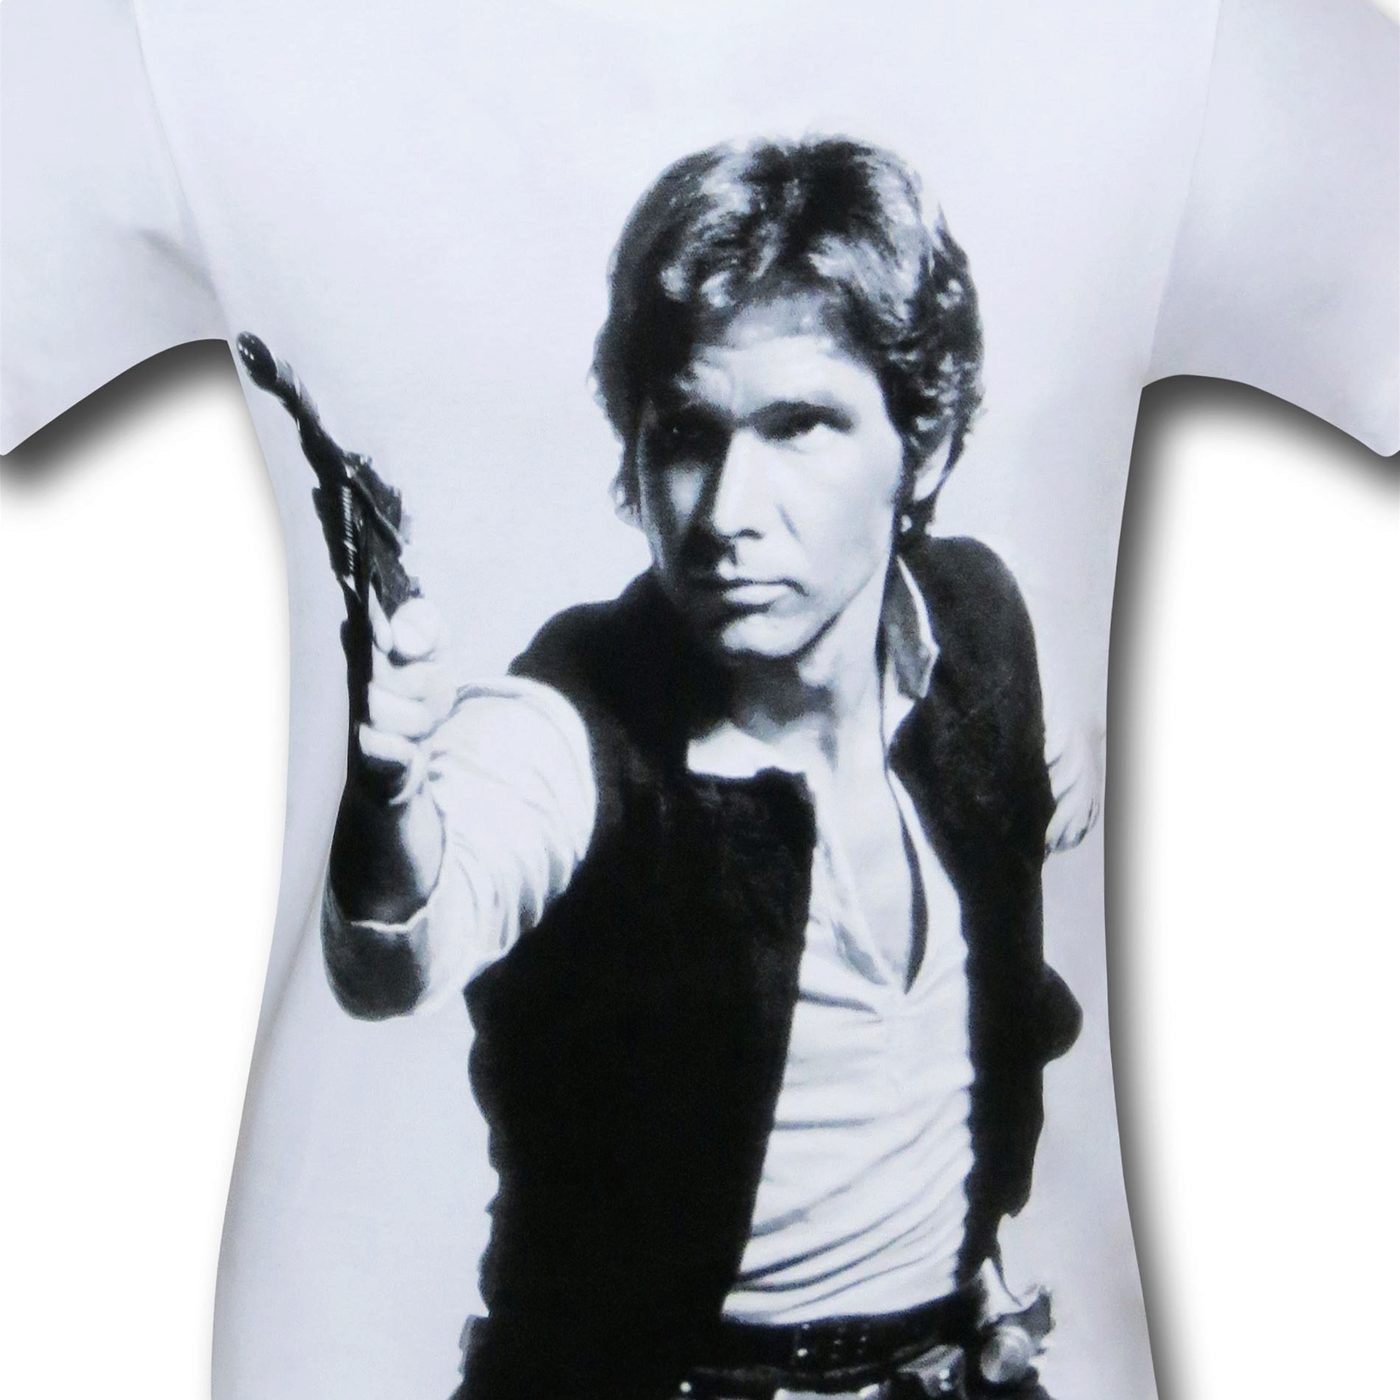 Star Wars Han's a Blast 30 Single T-Shirt